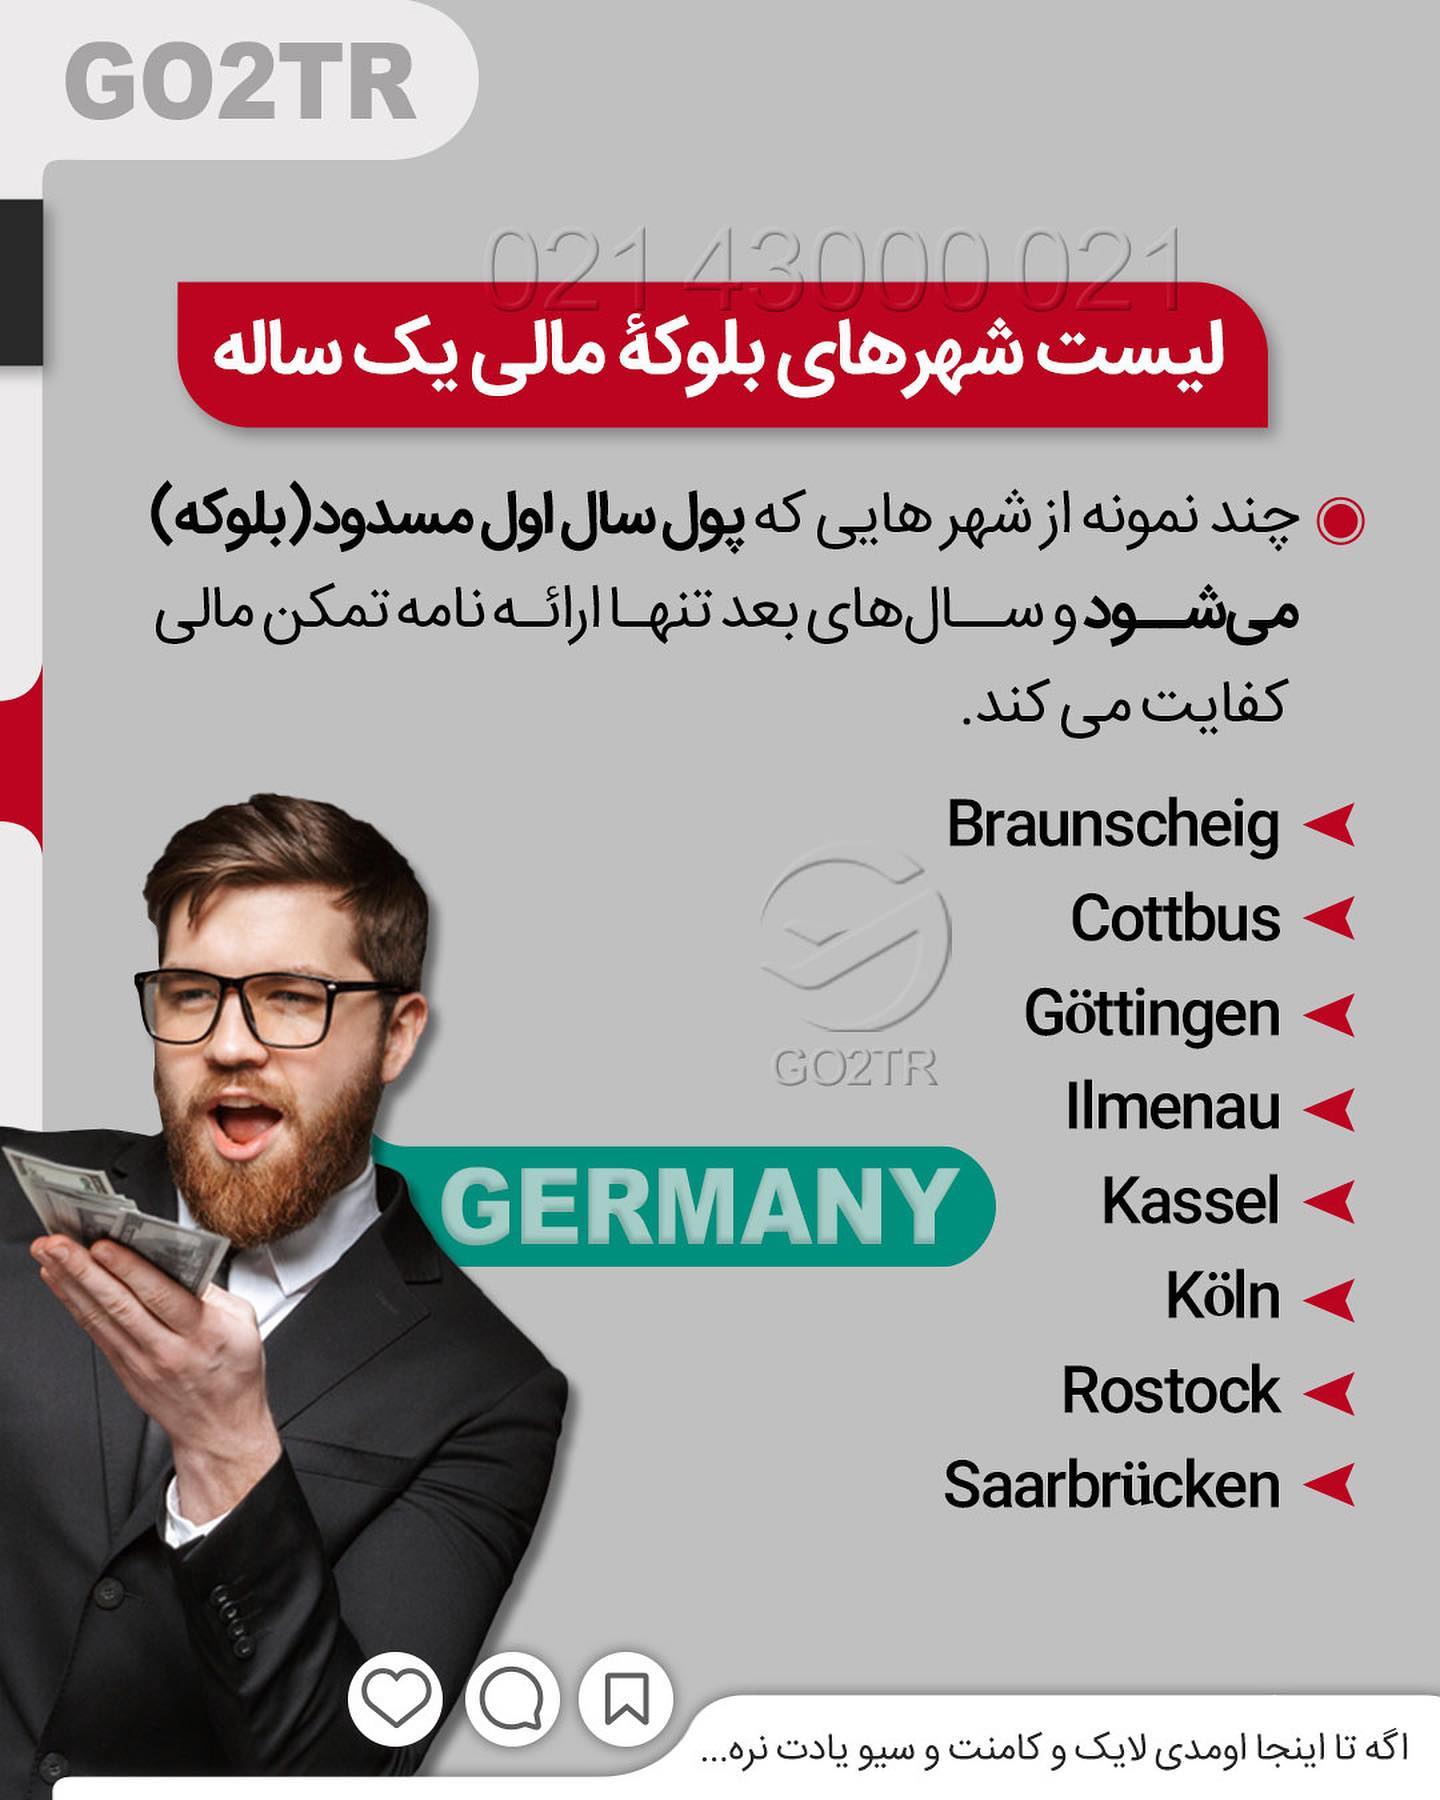 کیه که ندونه تحصیل در آلمان به زبان آلمانی رایگانه... 🤩 . • حقیقت اینه تحصیل د